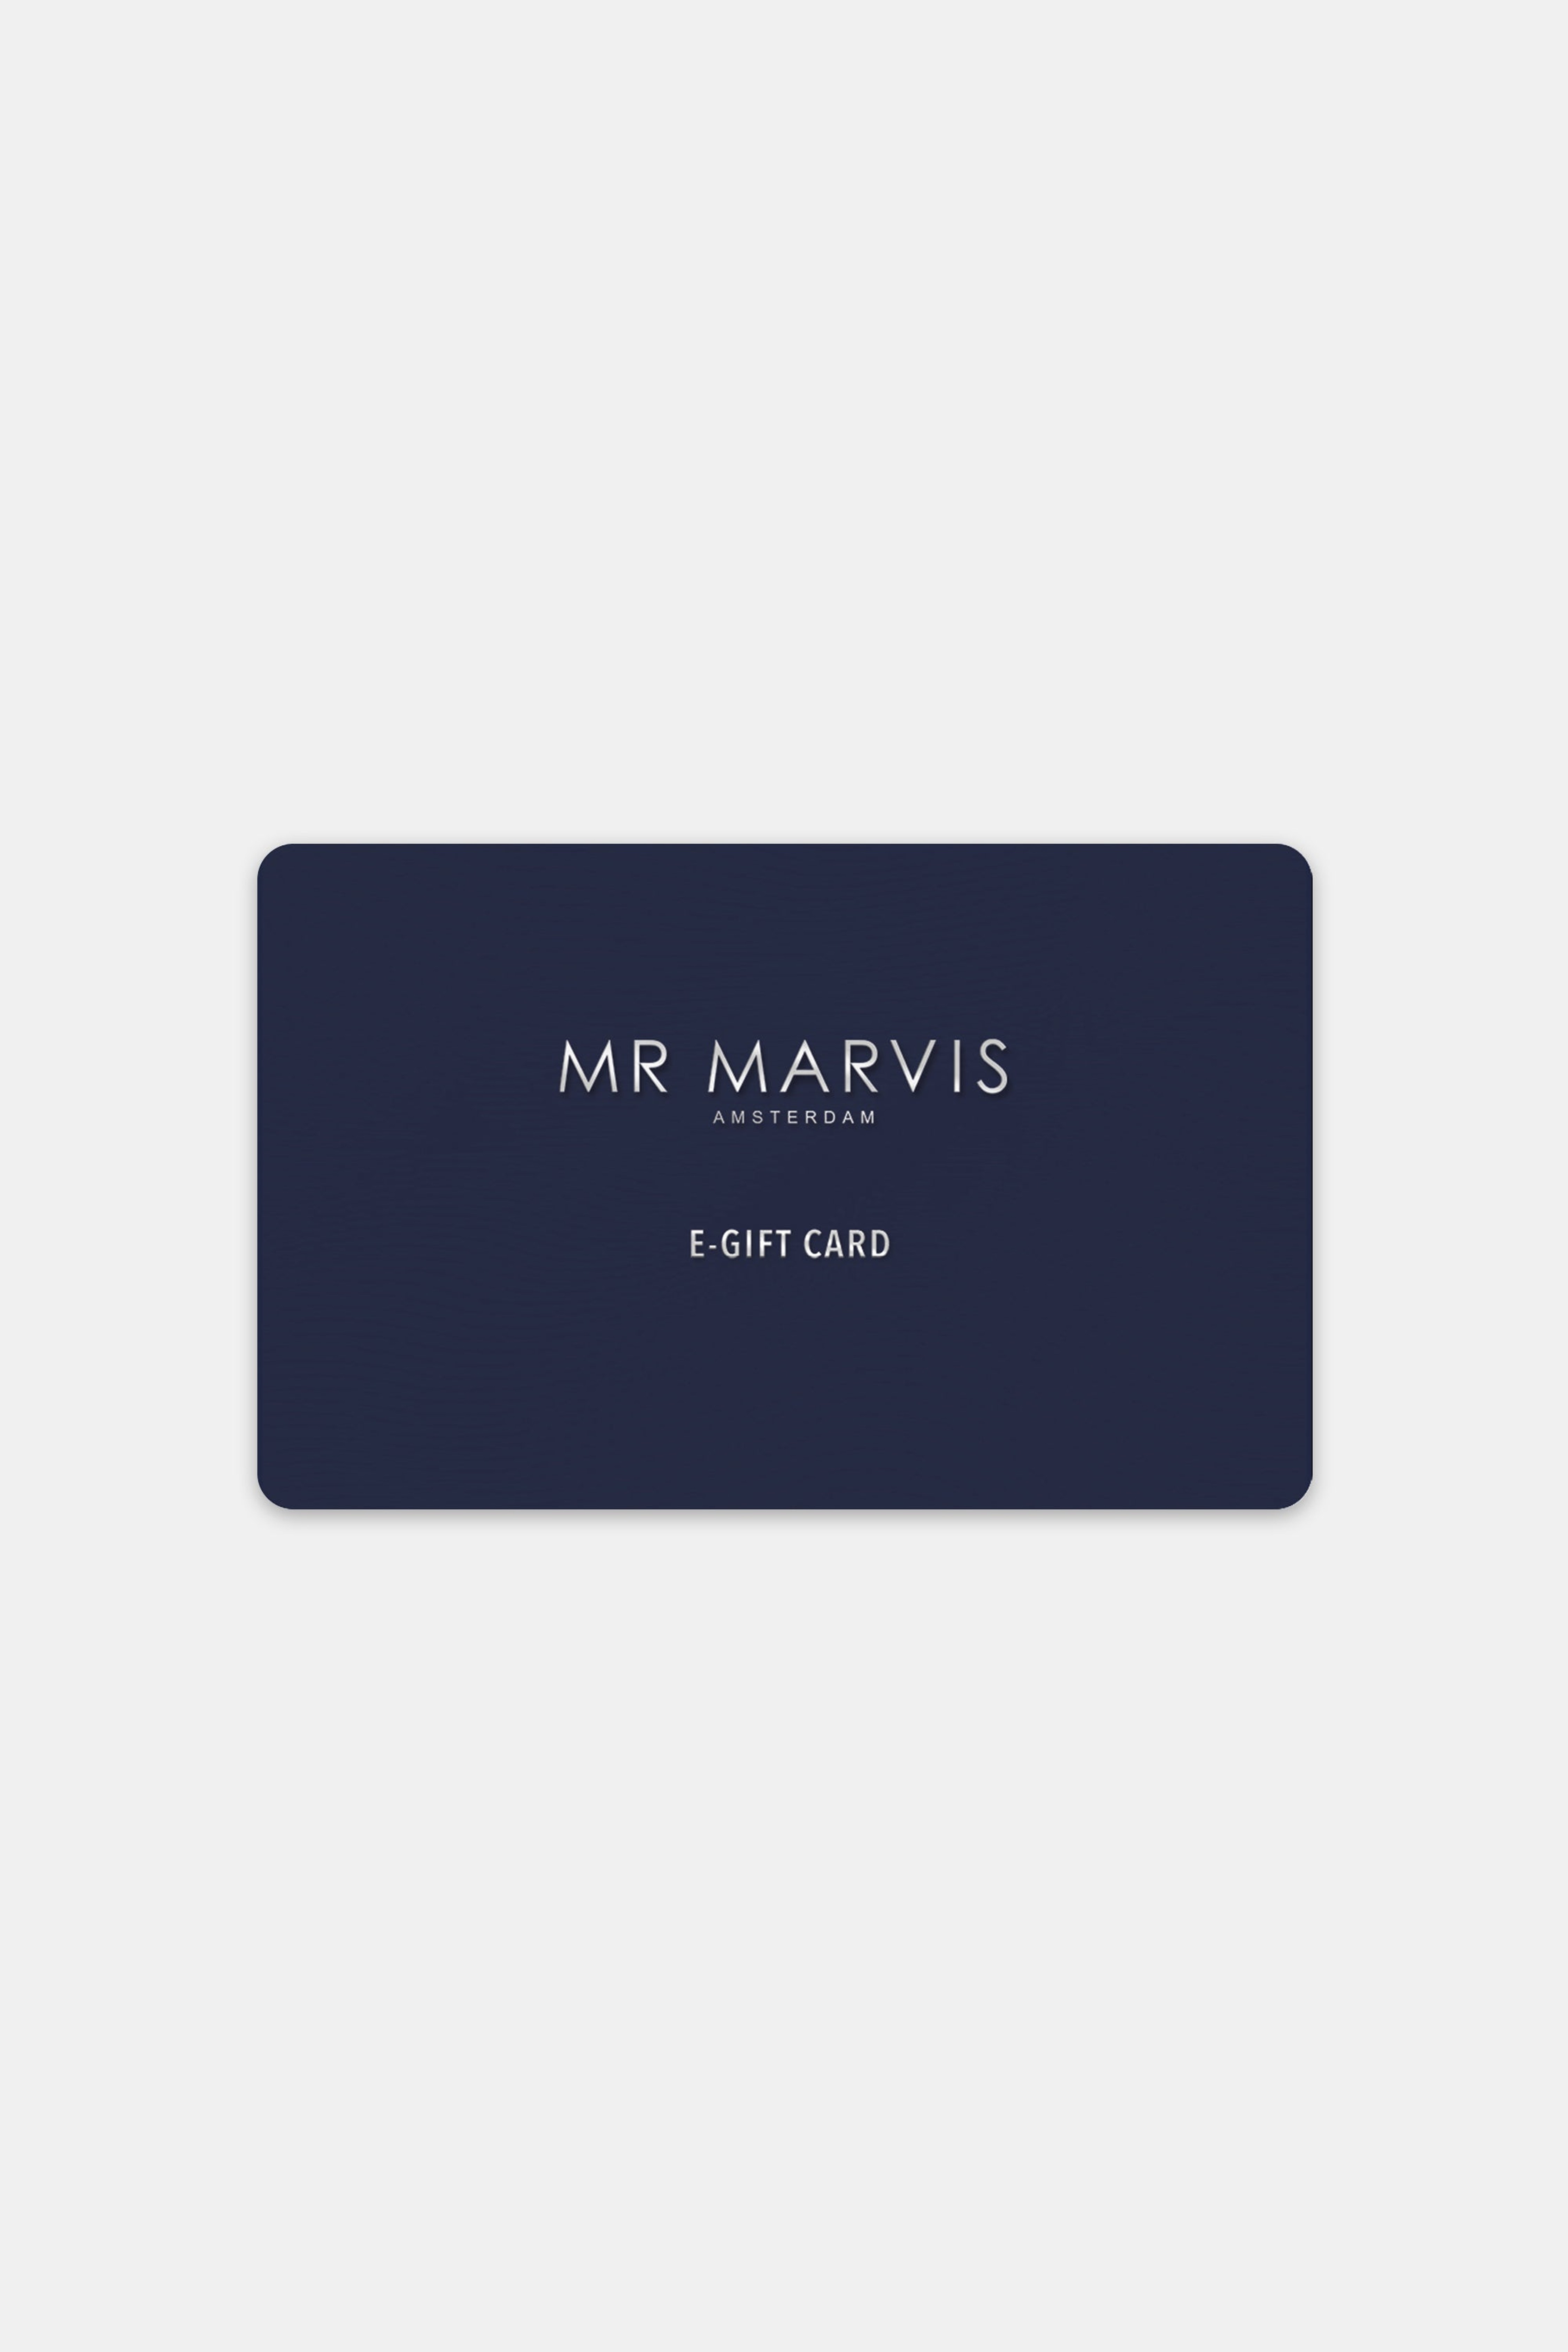 MR MARVIS' Virtuele Cadeaukaart